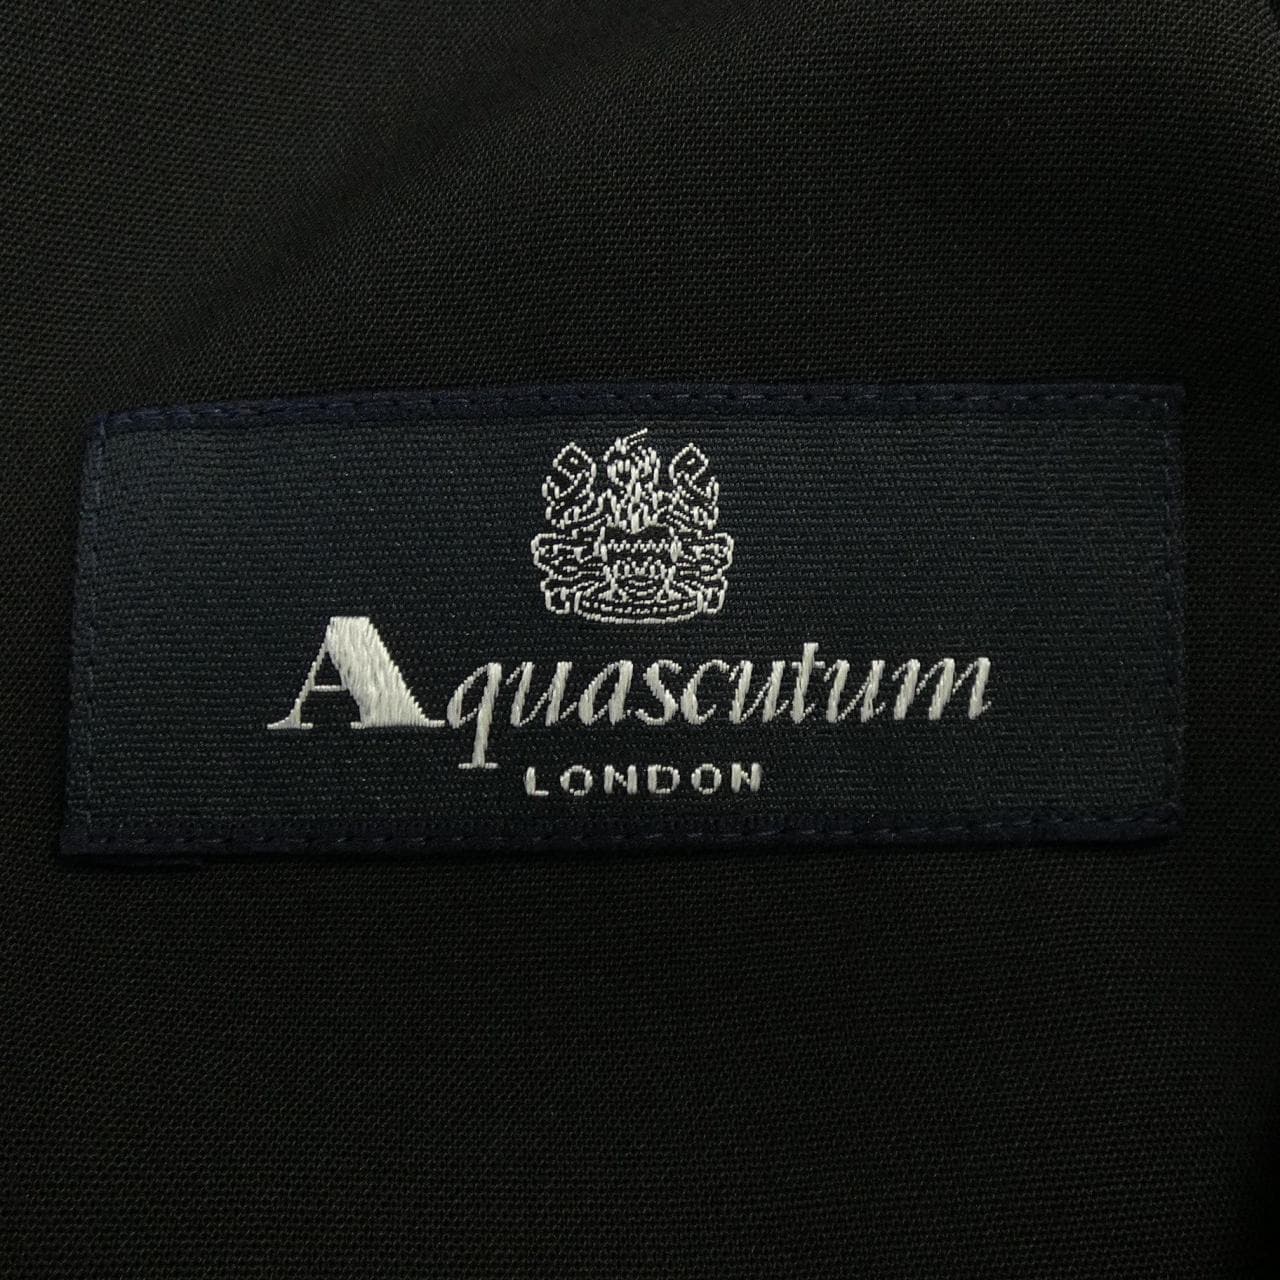 Aquascutum套装